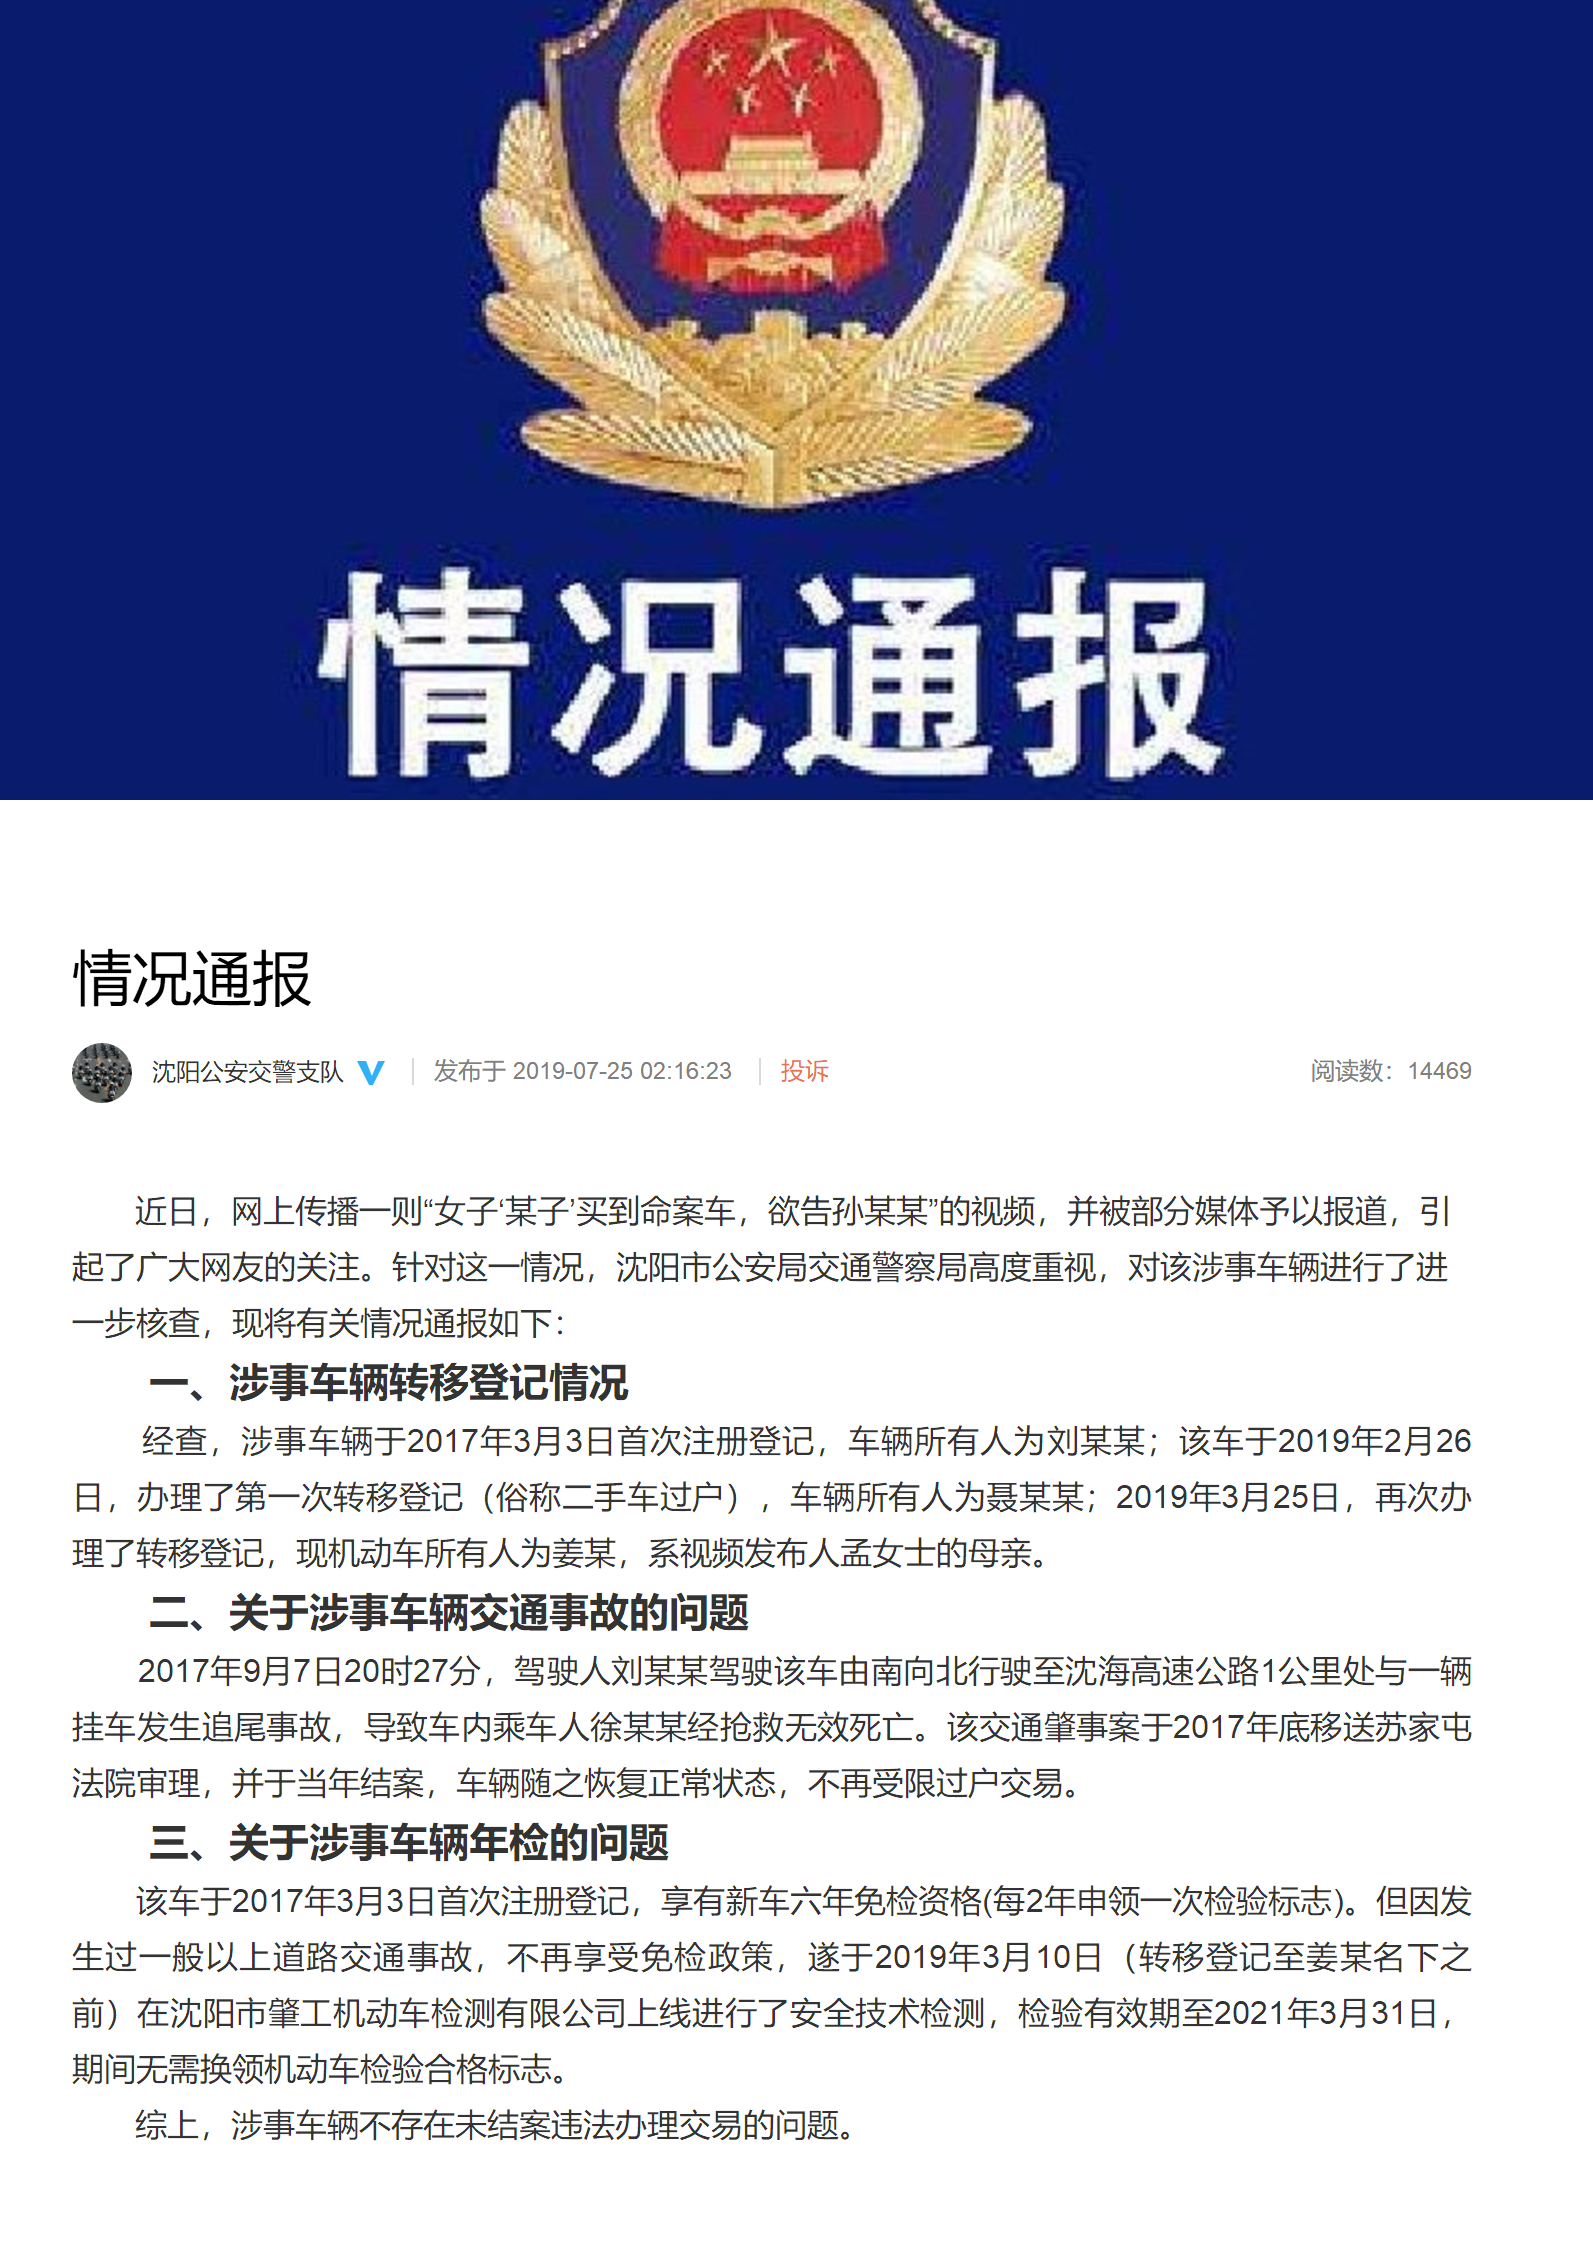 发布了头条文章：情况通报 来自沈阳公安交警支队 - 微博.png